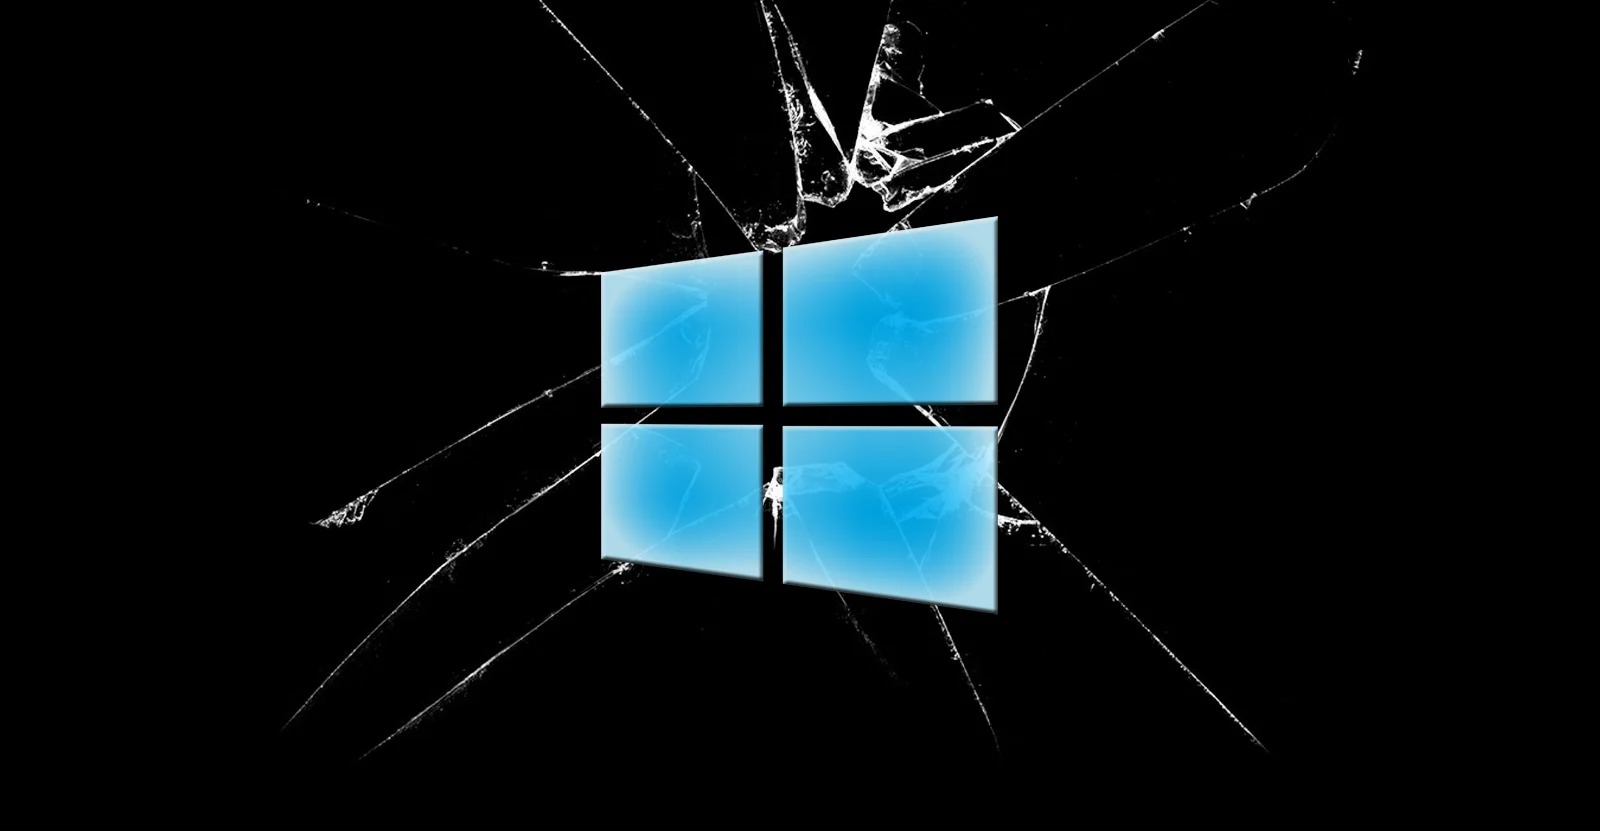 ใจมันได้! โปรแกรมเมอร์ซื้อ Windows 10 แท้ใส่คีย์ไม่ผ่าน ติดต่อซัปพอร์ต Microsoft ลงแคร็กให้เรียบร้อย